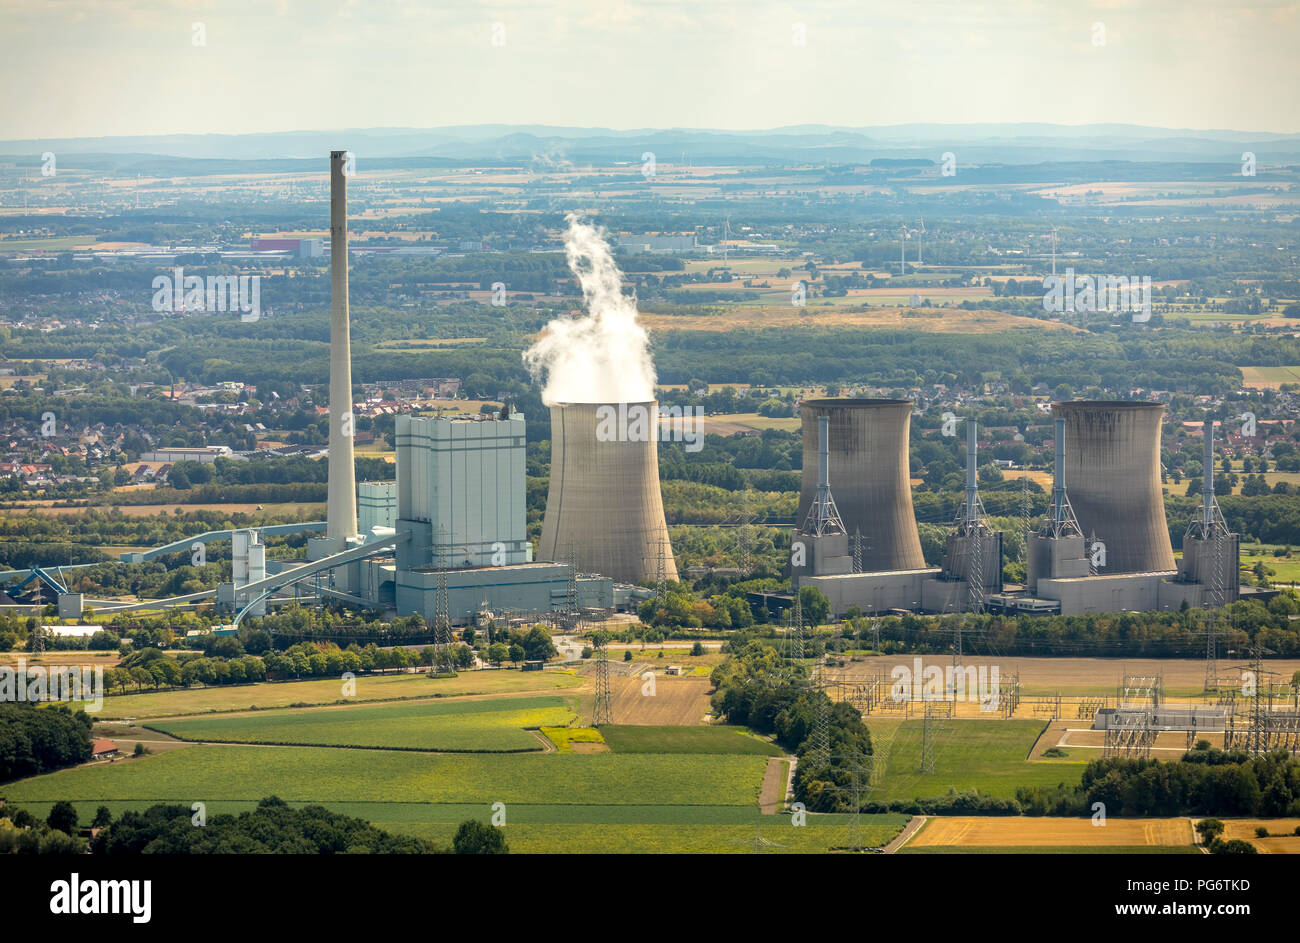 Gersteinwerk, planta de energía de vapor combinado de hulla y gas natural, RWE AG en el distrito de Werner Stockum, torres de refrigeración, vapor de agua, emisiones chim Foto de stock